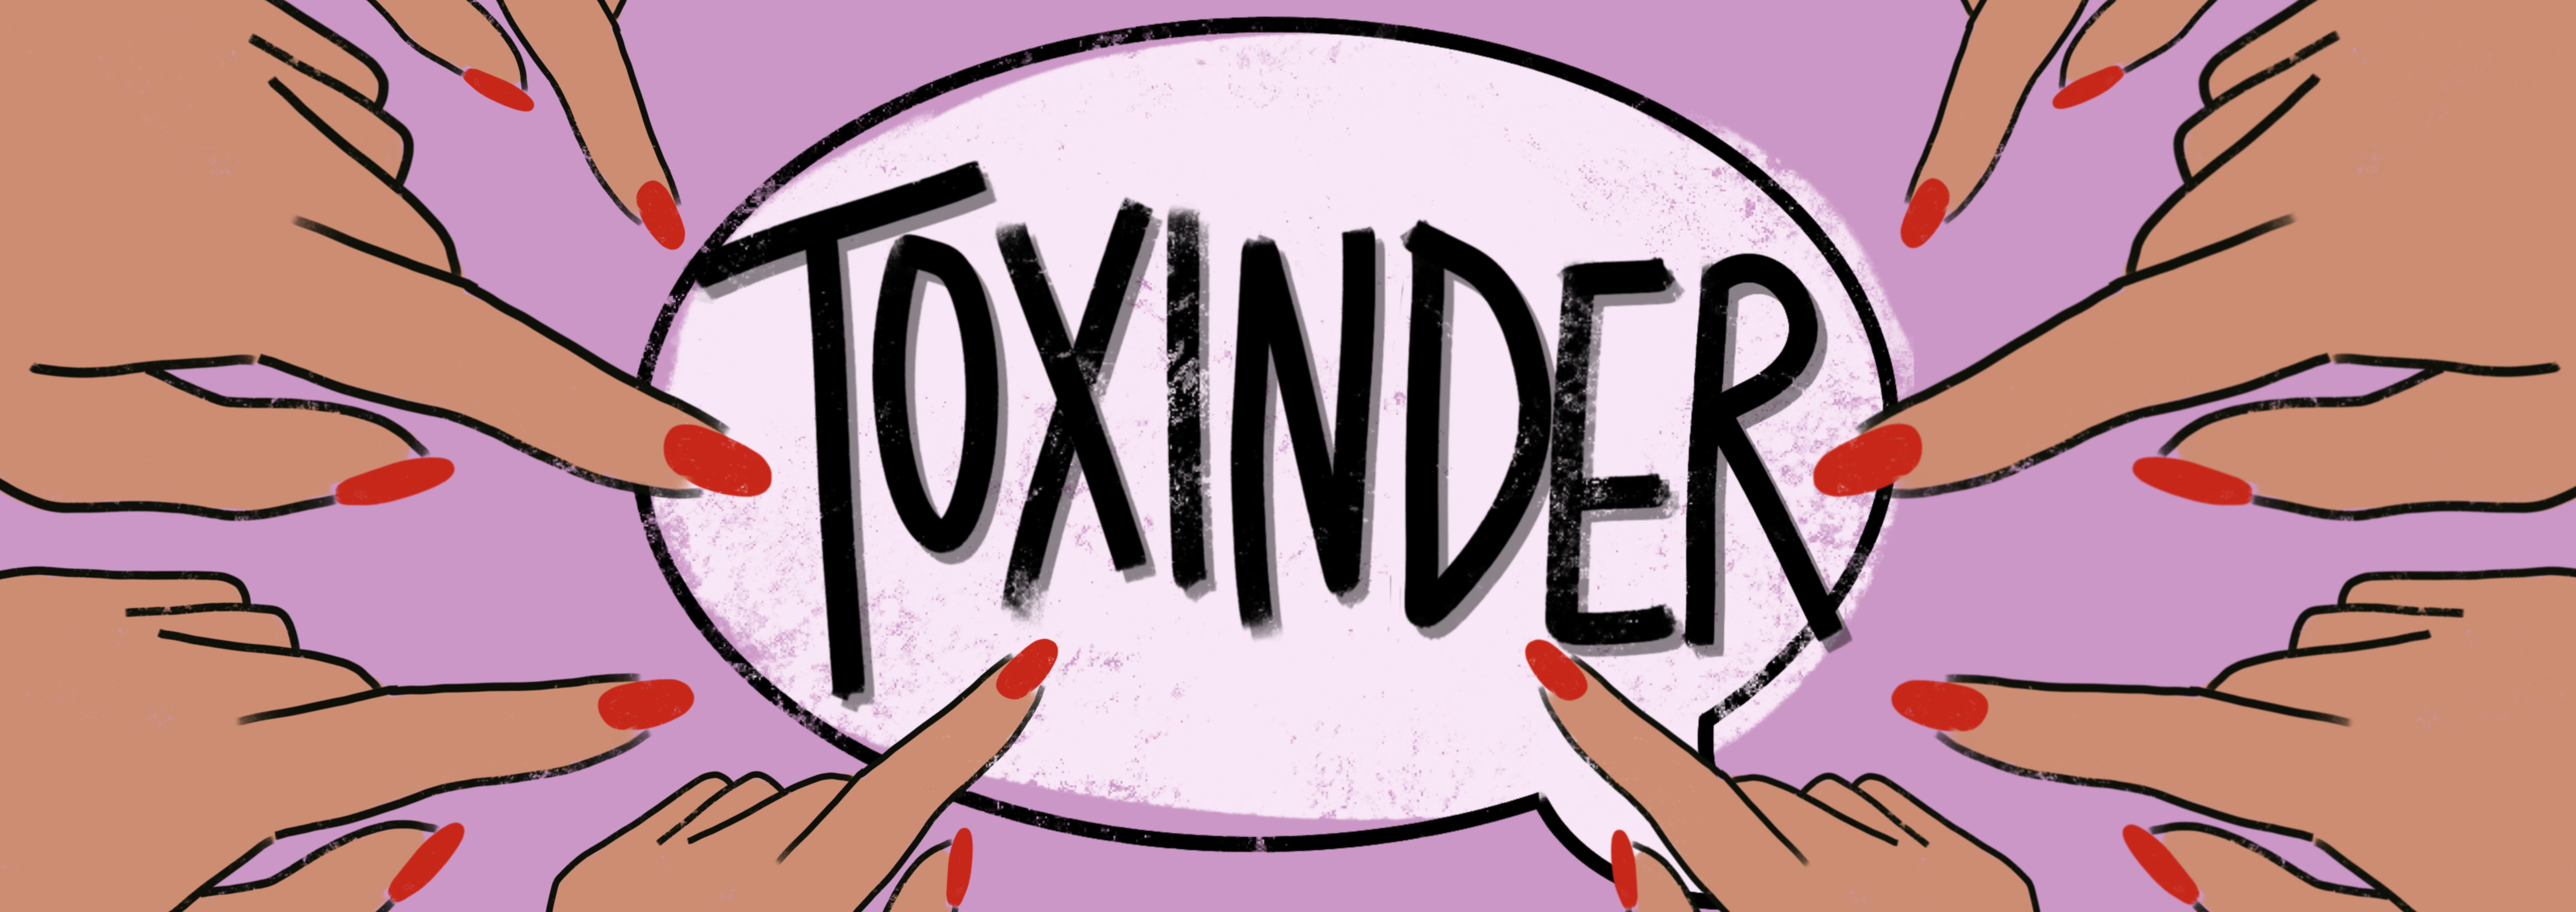 toxinder